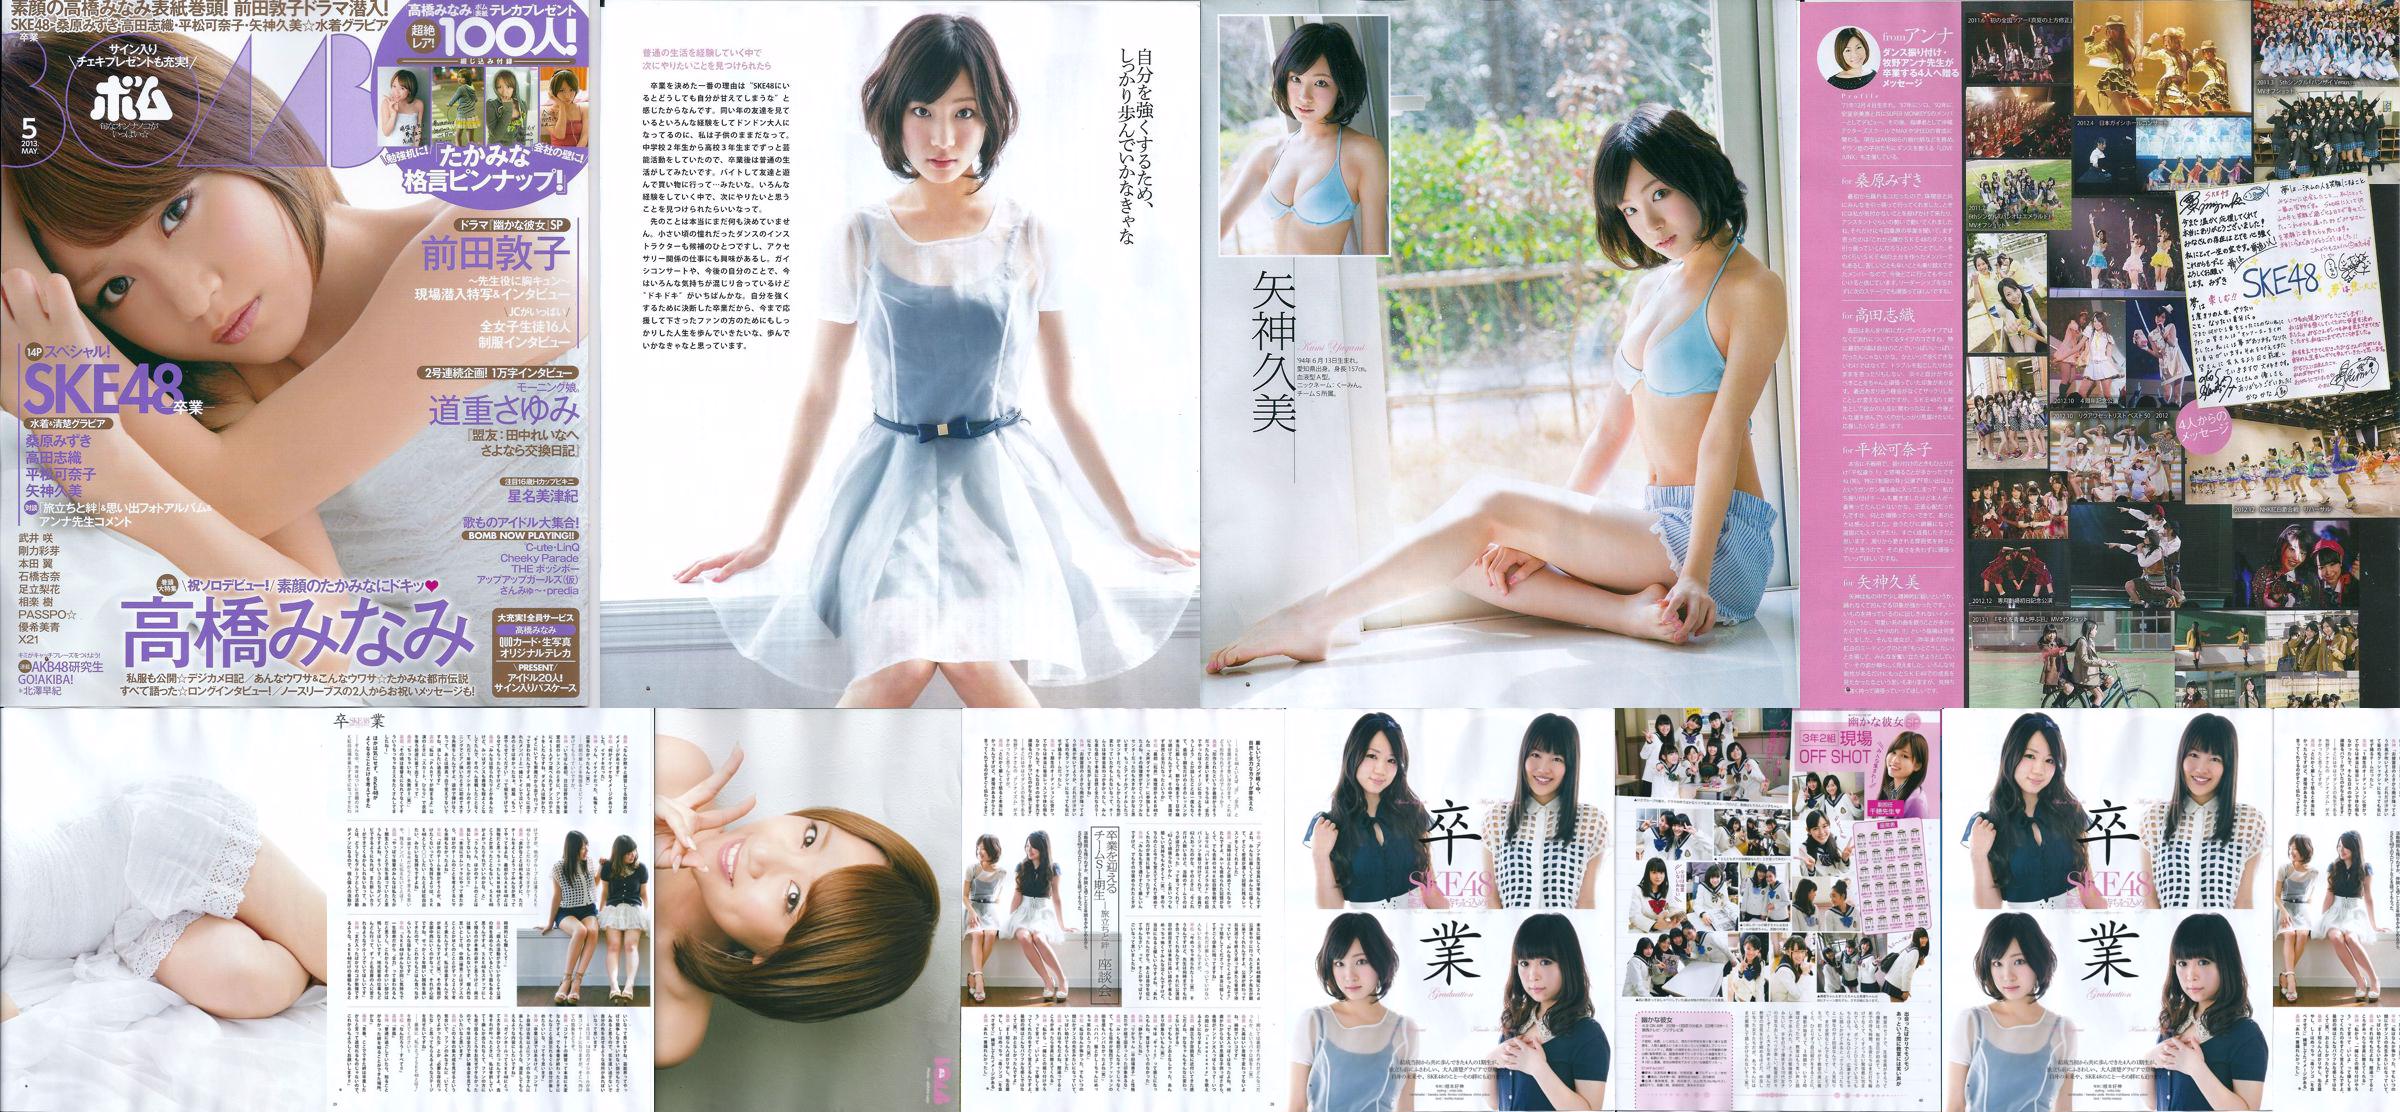 [Bomb Magazine] 2013 No.05 Kumi Yagami Minami Takahashi Atsuko Maeda Foto No.a45371 Seite 1